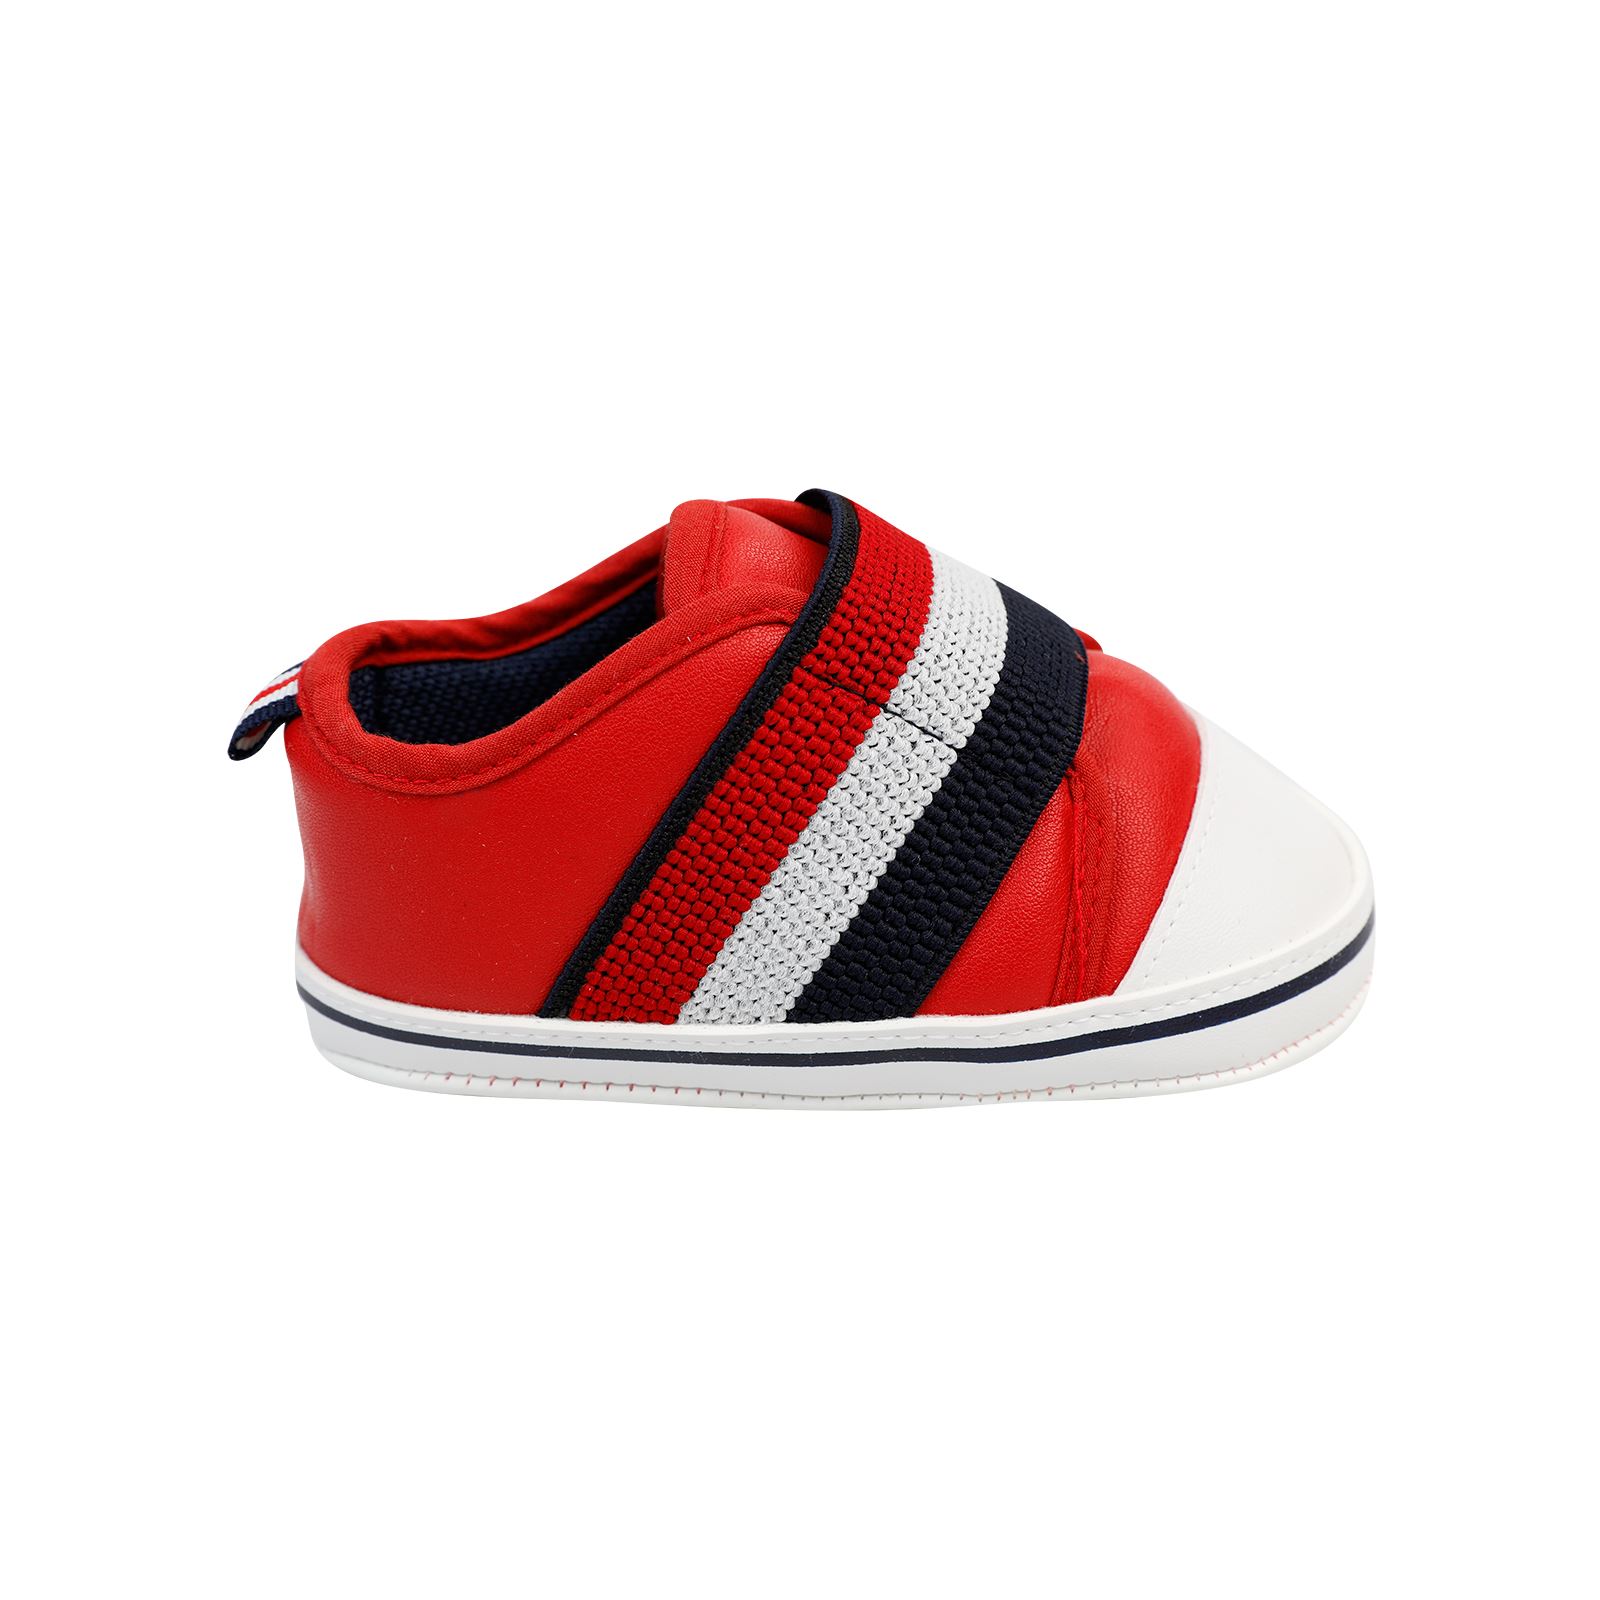 Civil Baby Erkek Bebek Patik Ayakkabı 17-19 Numara Kırmızı